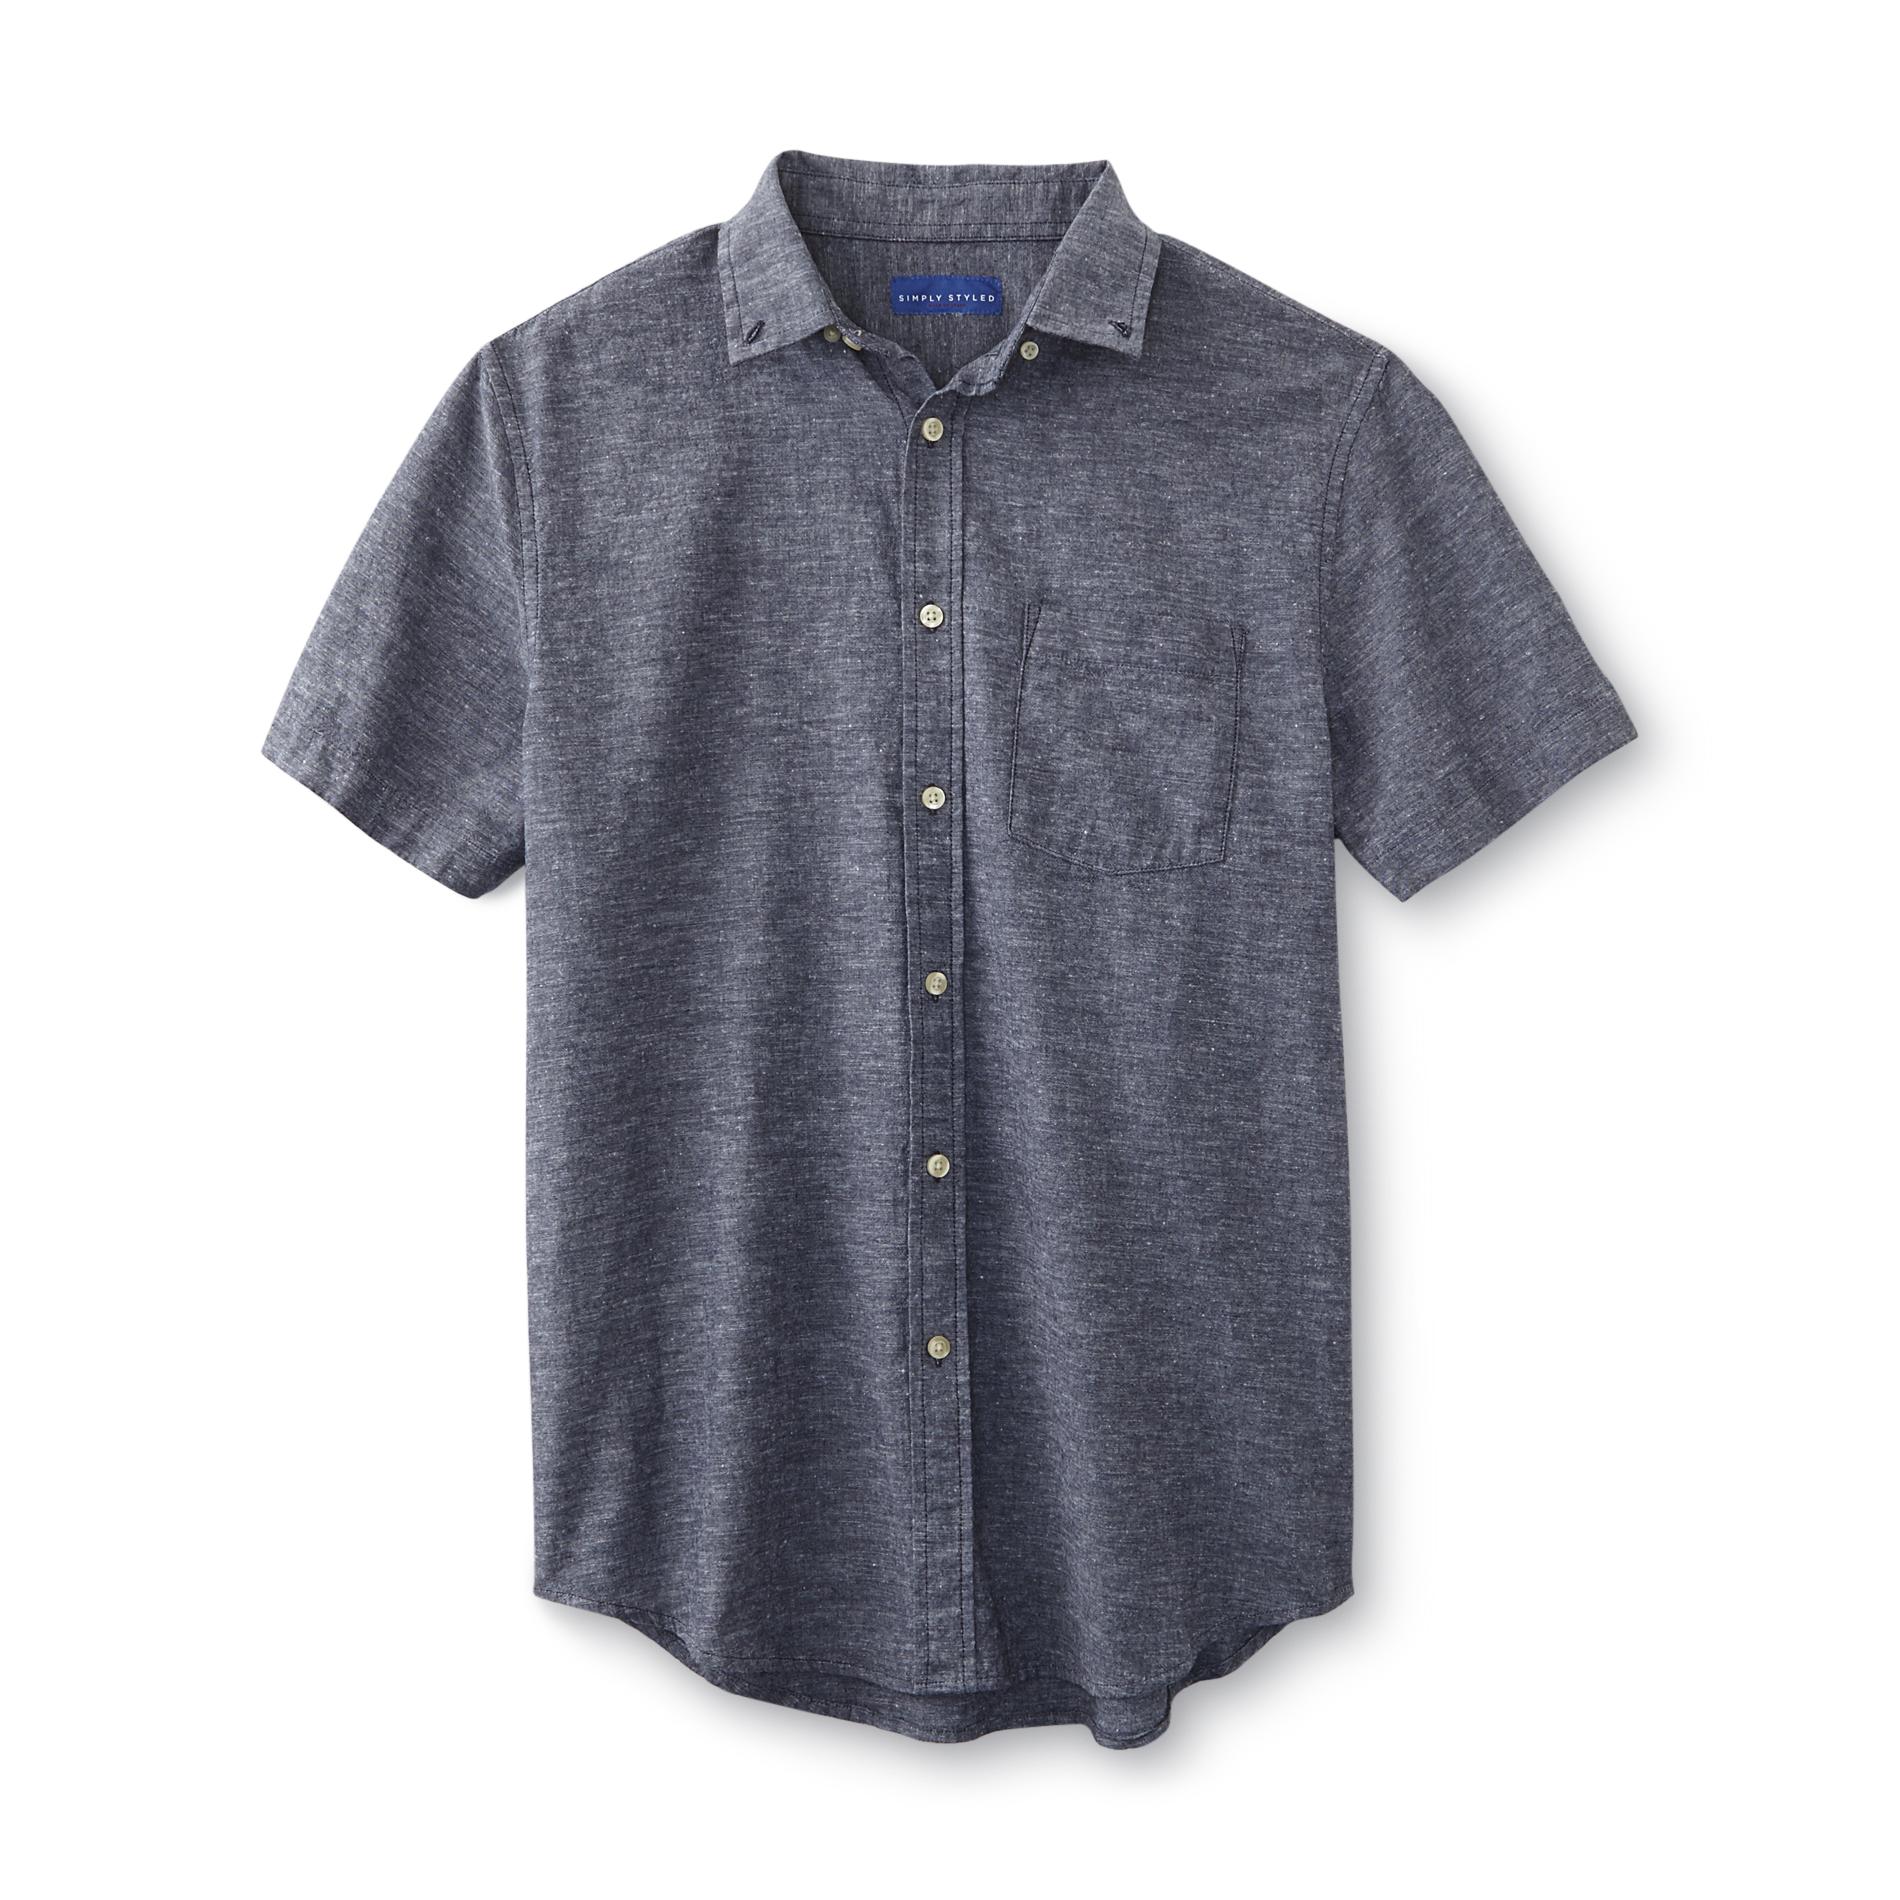 Simply Styled Men's Linen-Blend Shirt